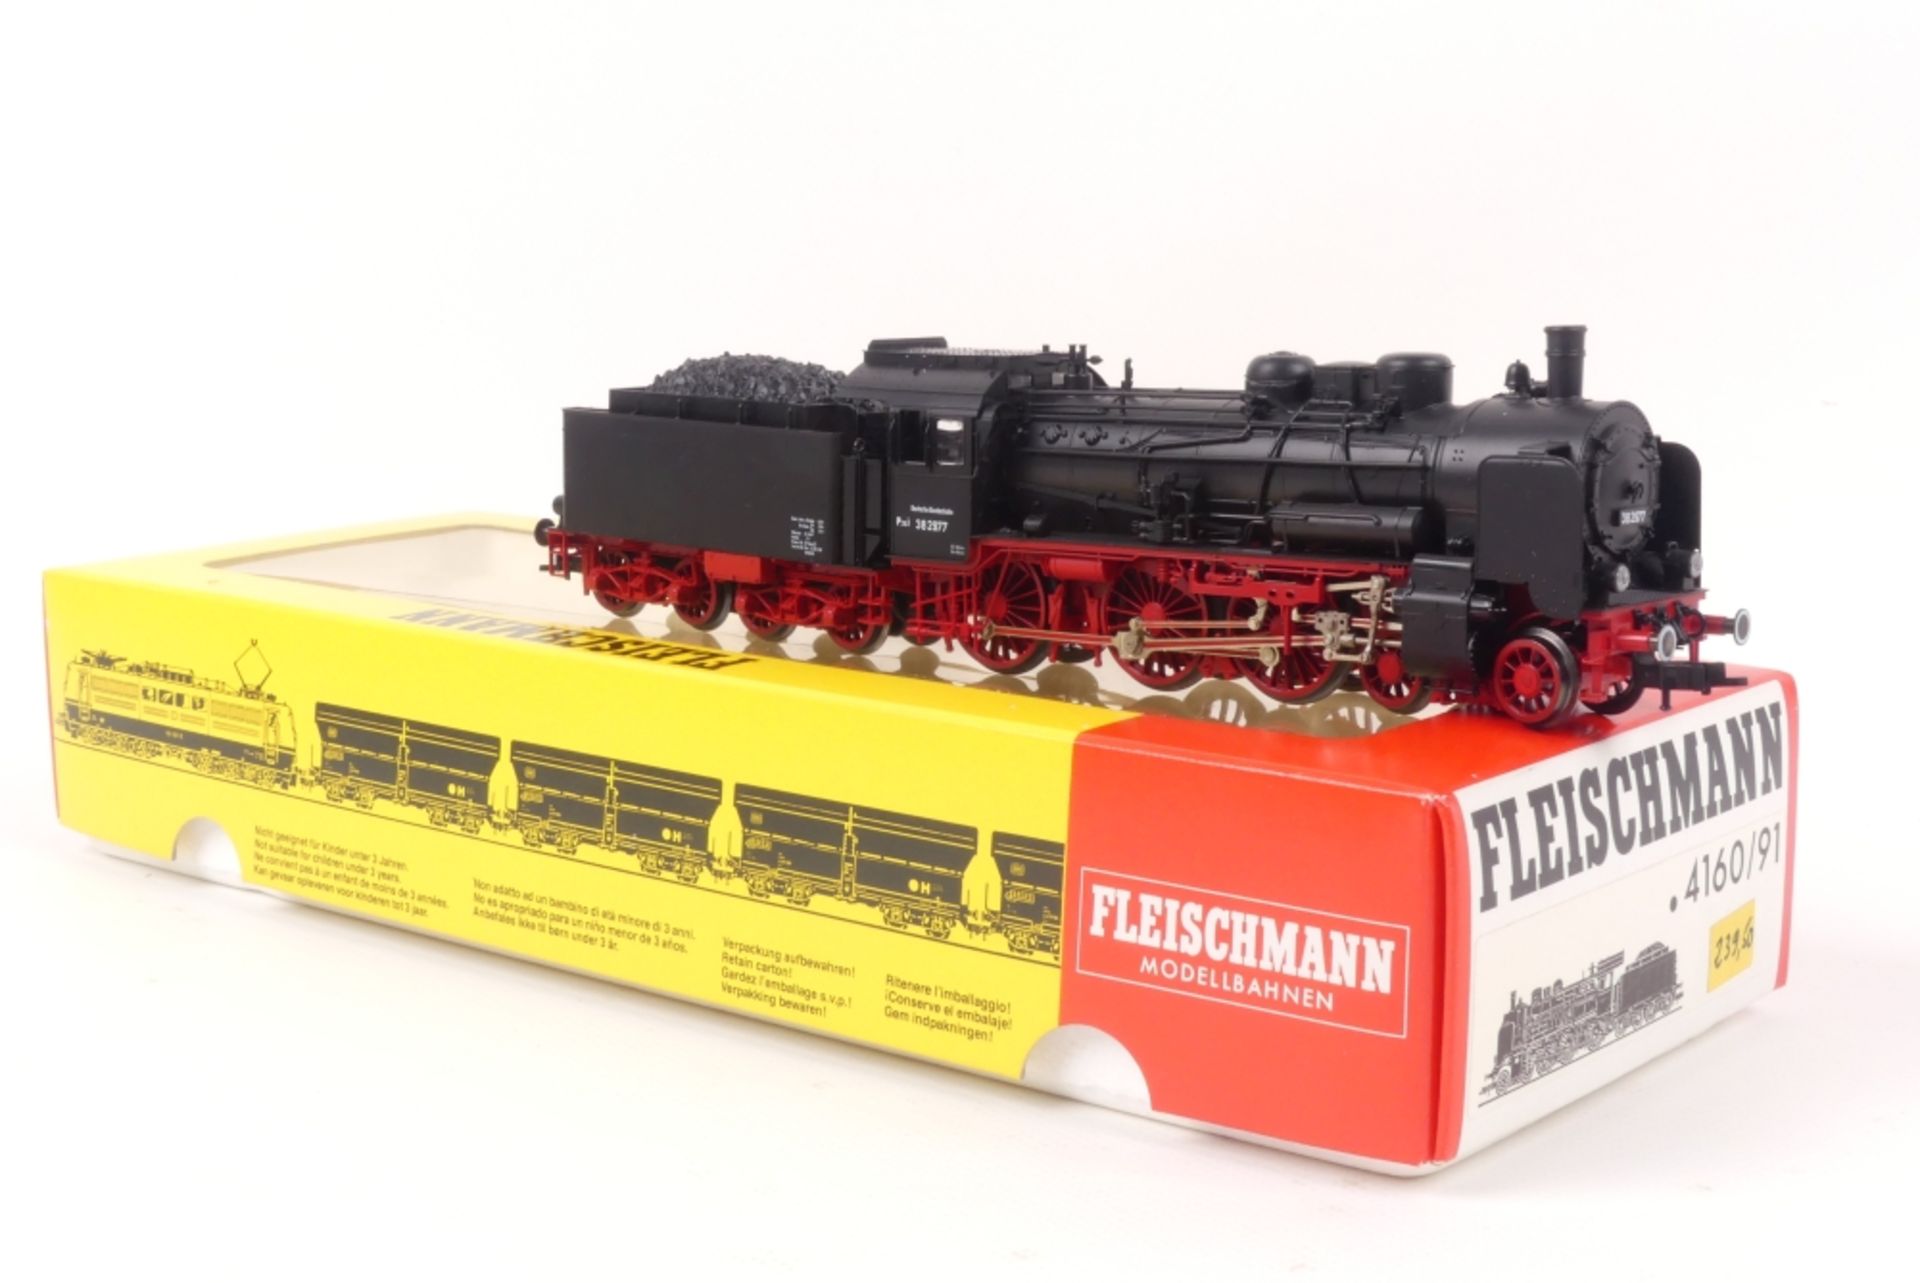 Fleischmann 4160/91Fleischmann 4160/91, DB Dampflok 38, schwarz/rot, sehr gut erhalten